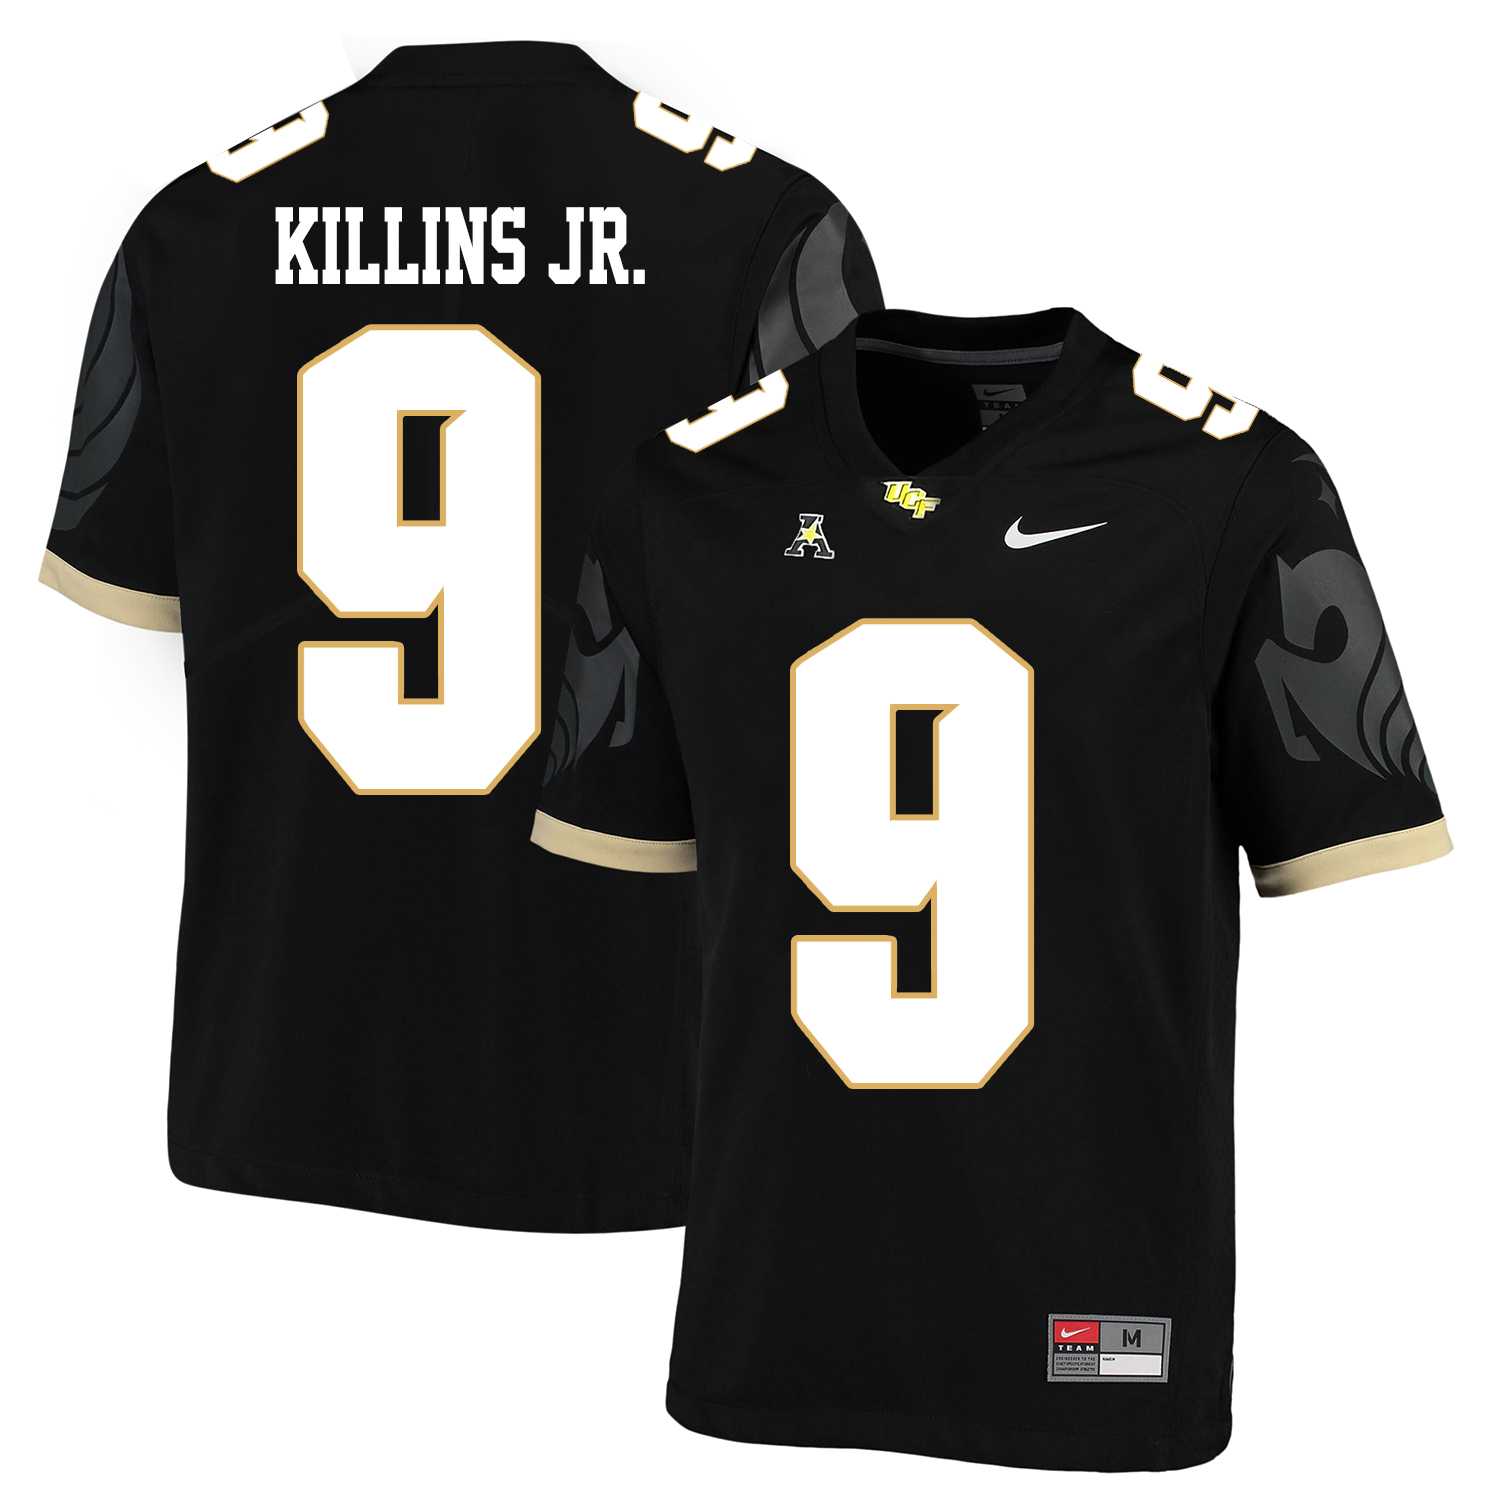 UCF Knights #9 Adrian Killins Jr. Black College Football Jersey